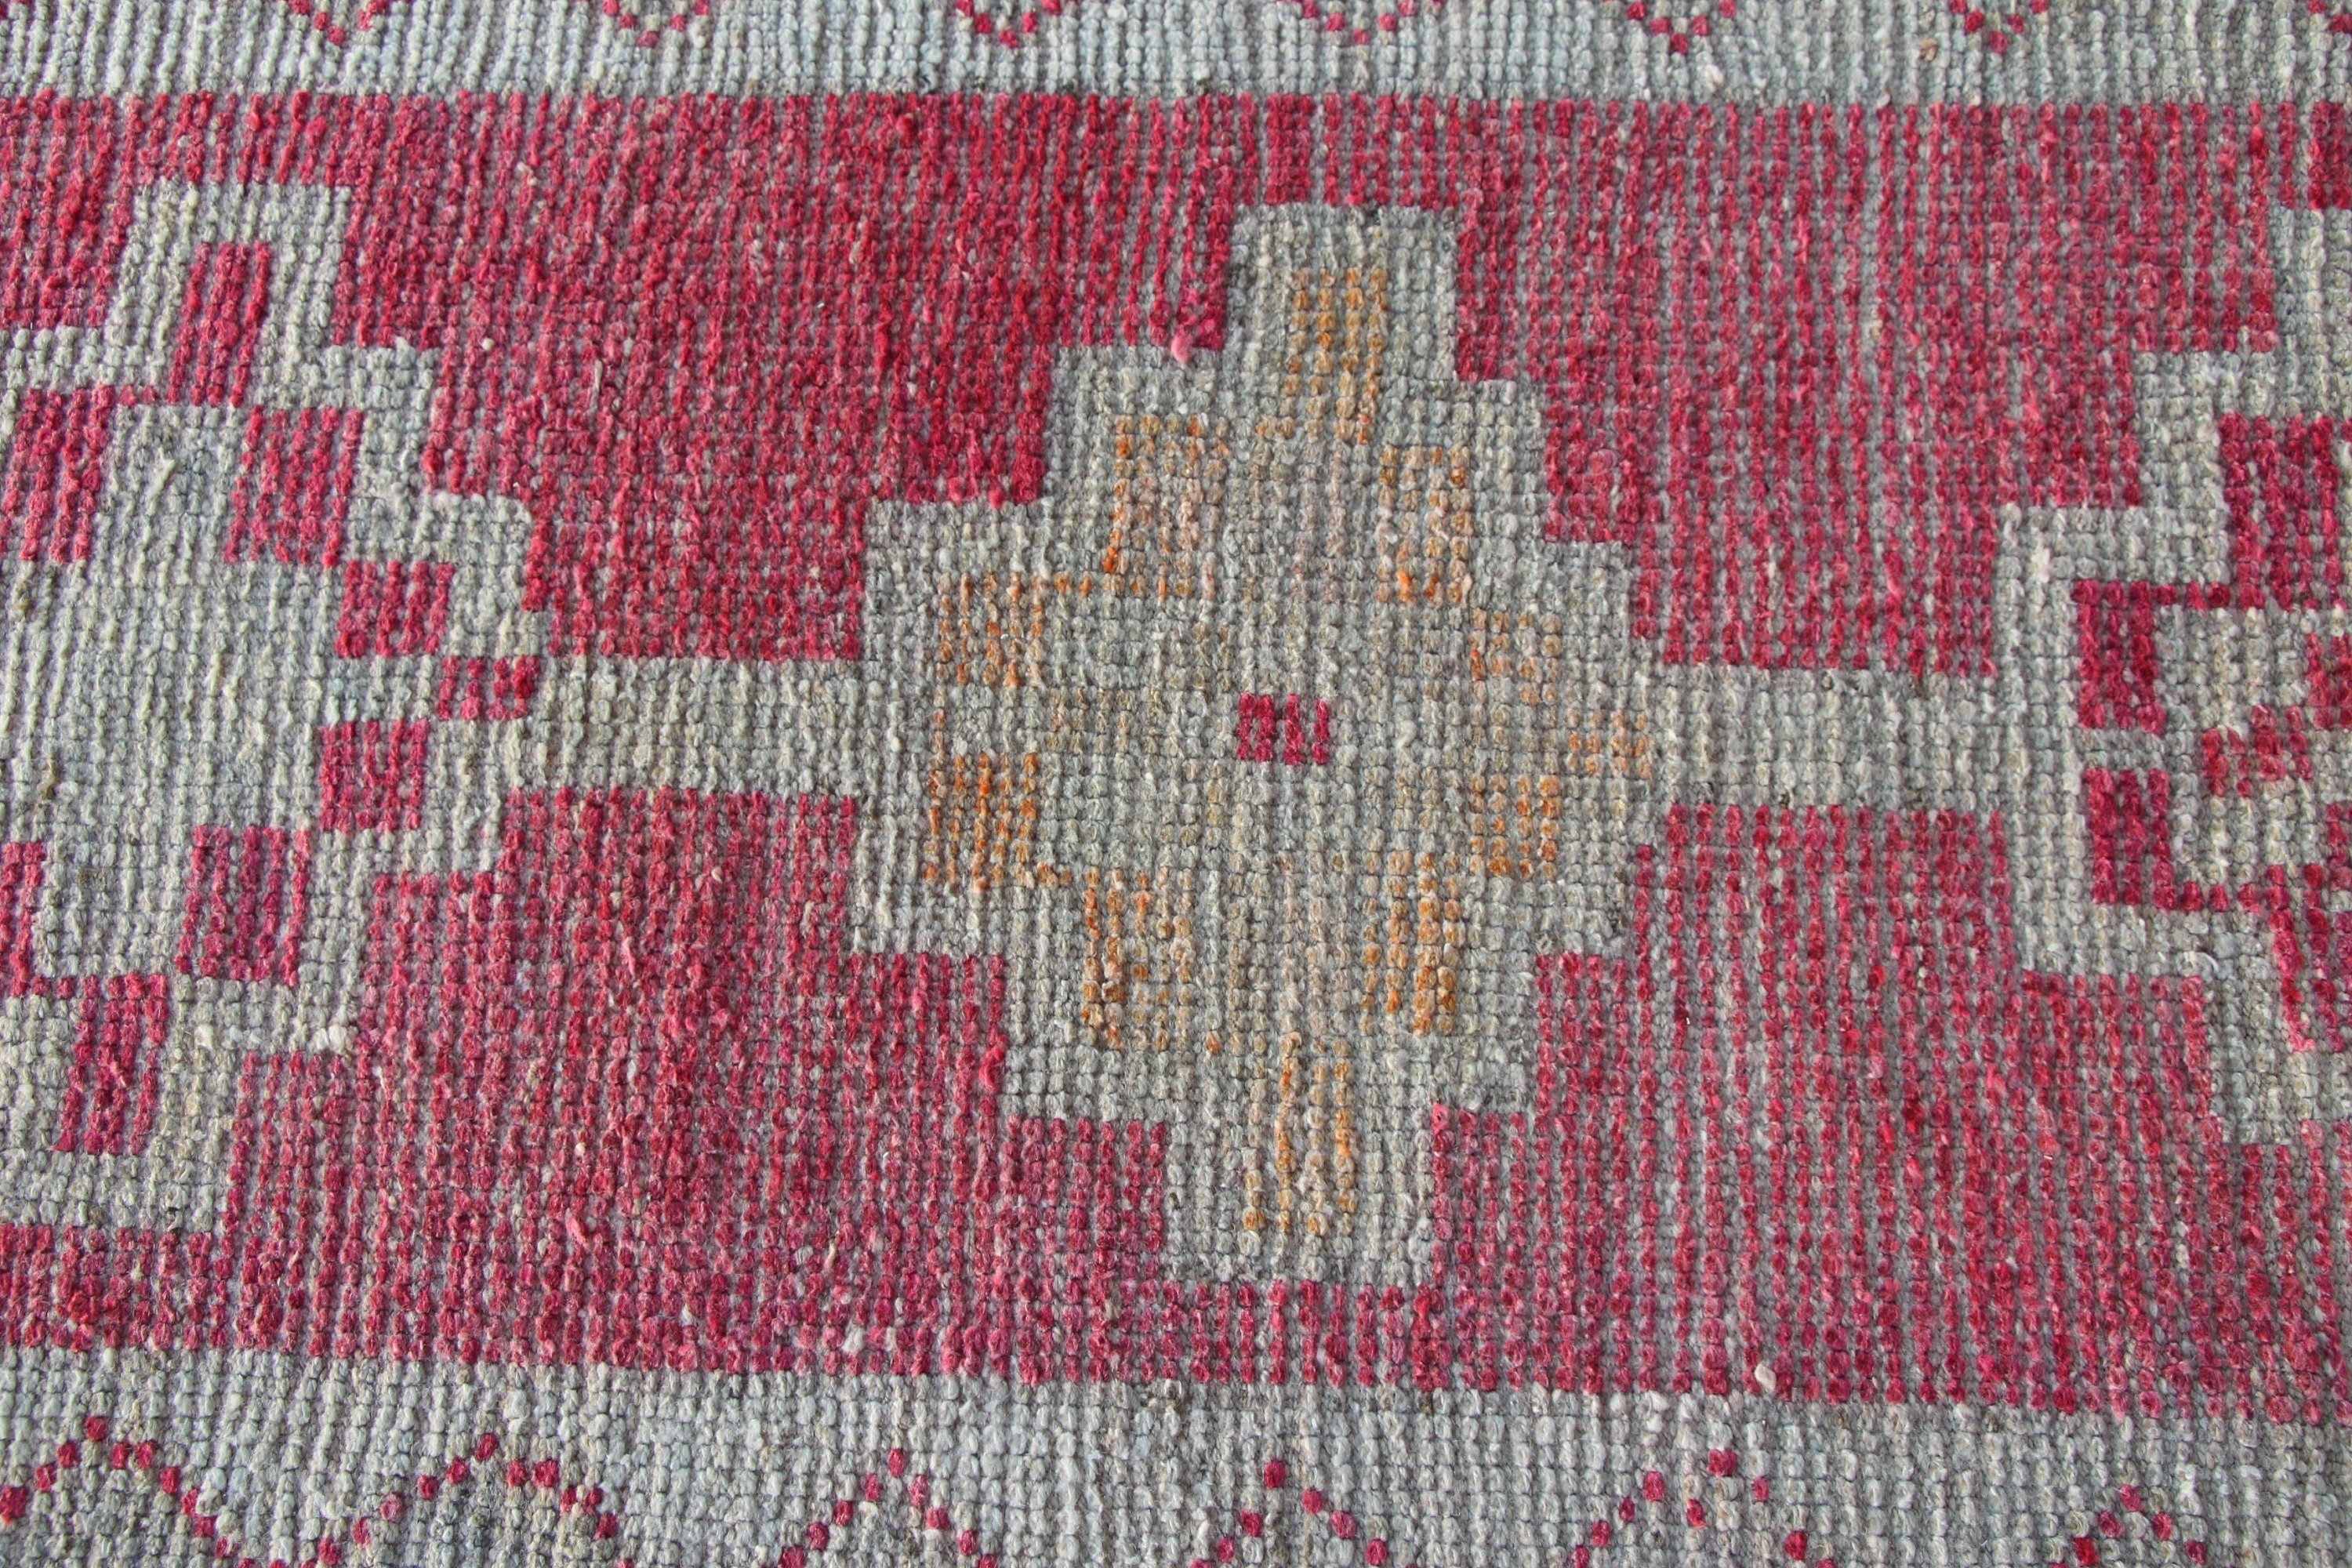 Nomadic Rug, Anatolian Rugs, Vintage Rug, Corridor Rugs, Hallway Rugs, Turkish Rug, Red Oriental Rug, 2.3x11.4 ft Runner Rug